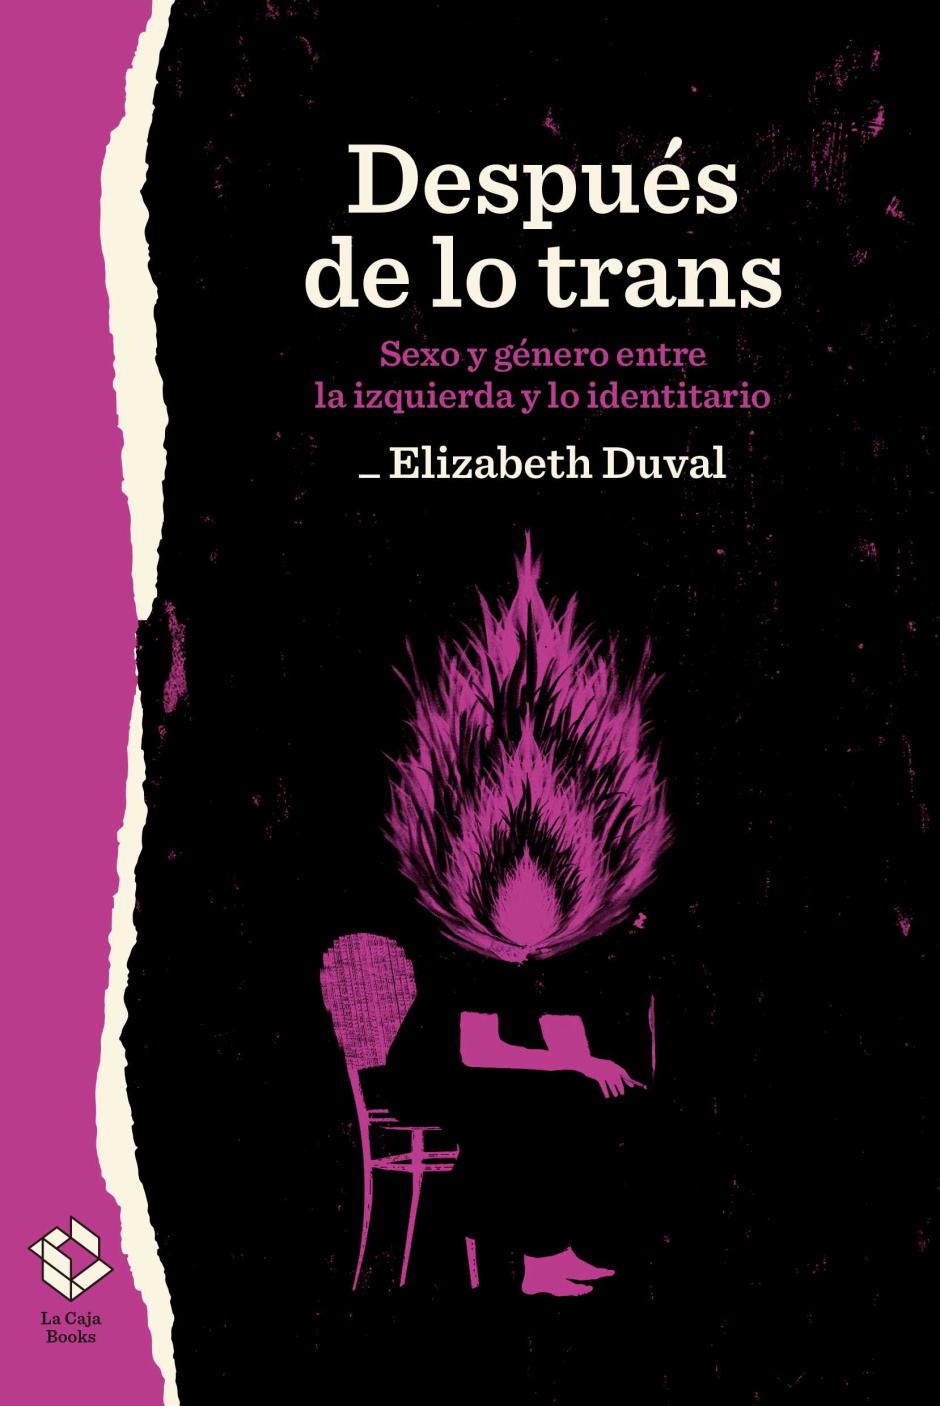 'Después de lo trans' es el libro que situó definitivamente en el mapa a Elizabeth Duval